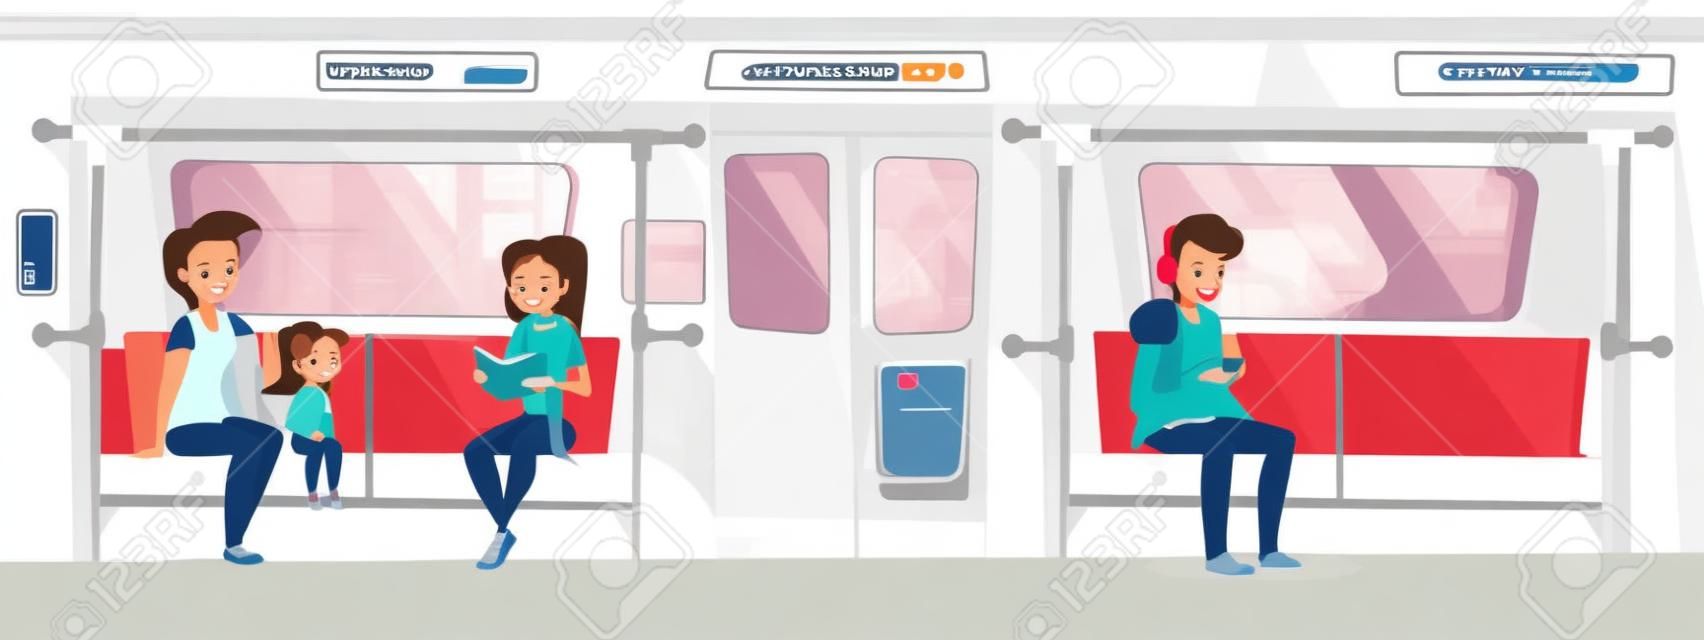 Люди в метро векторные иллюстрации. Молодая женщина с дочерью в метро читает книгу и улыбается, мальчик-подросток сидит на сиденье и слушает музыку в наушниках со смартфона